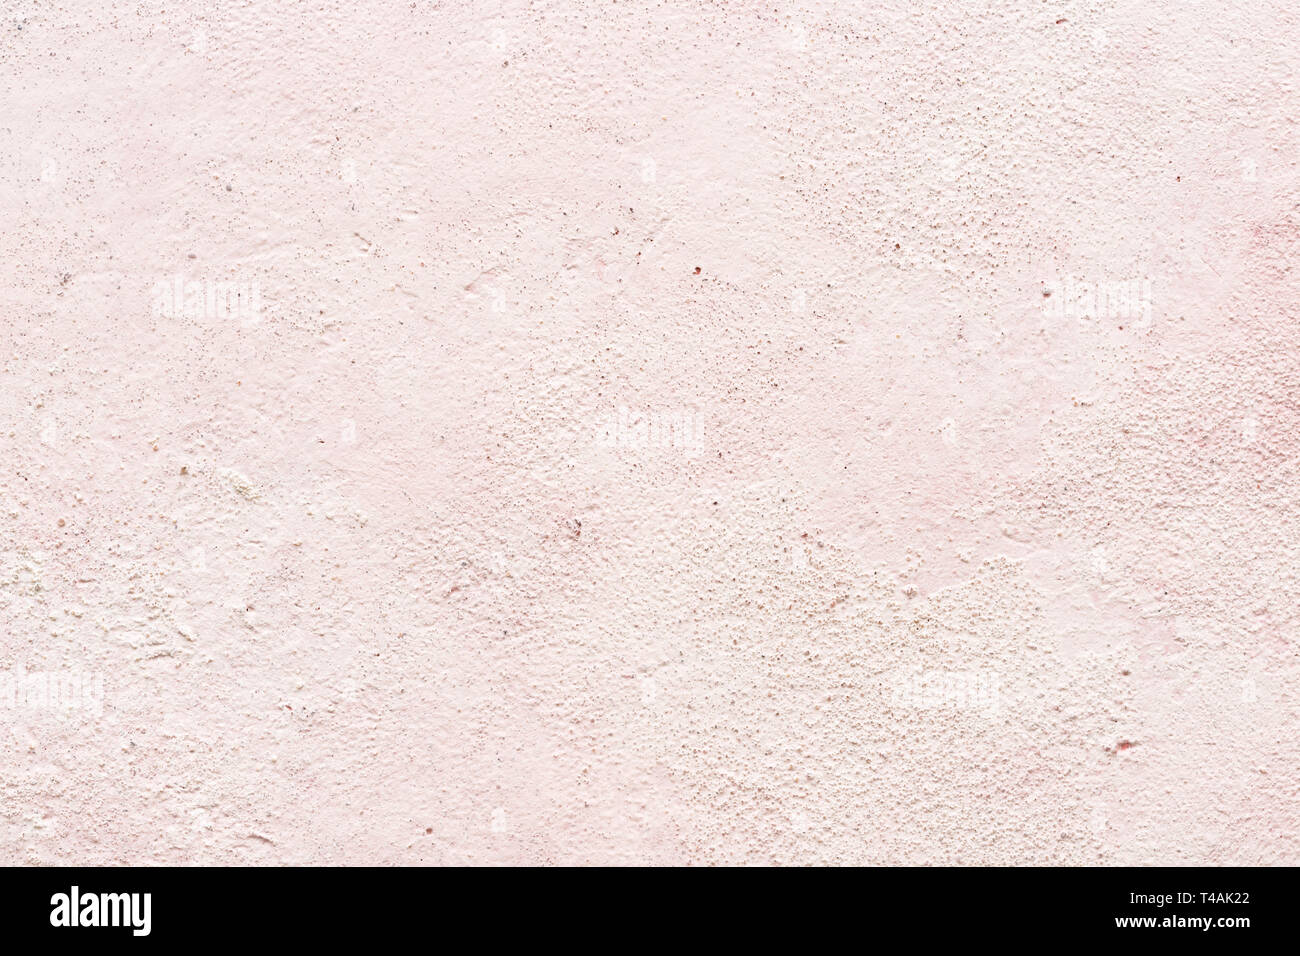 Intonaco rosa immagini e fotografie stock ad alta risoluzione - Alamy